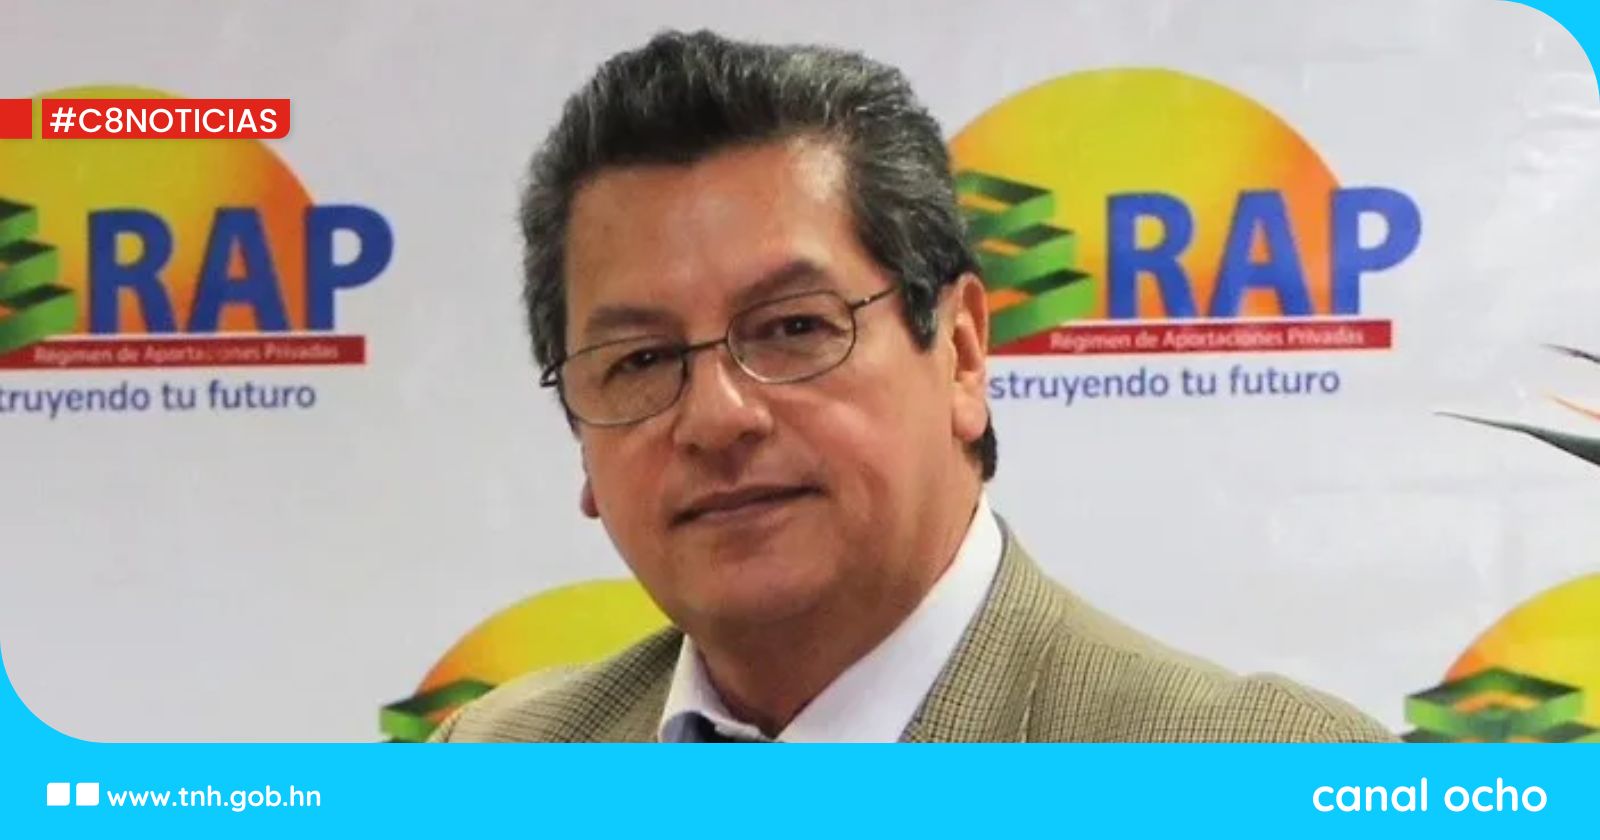 Ley sobre fondo de reserva laboral del RAP generará buena administración, afirma Enrique Burgos